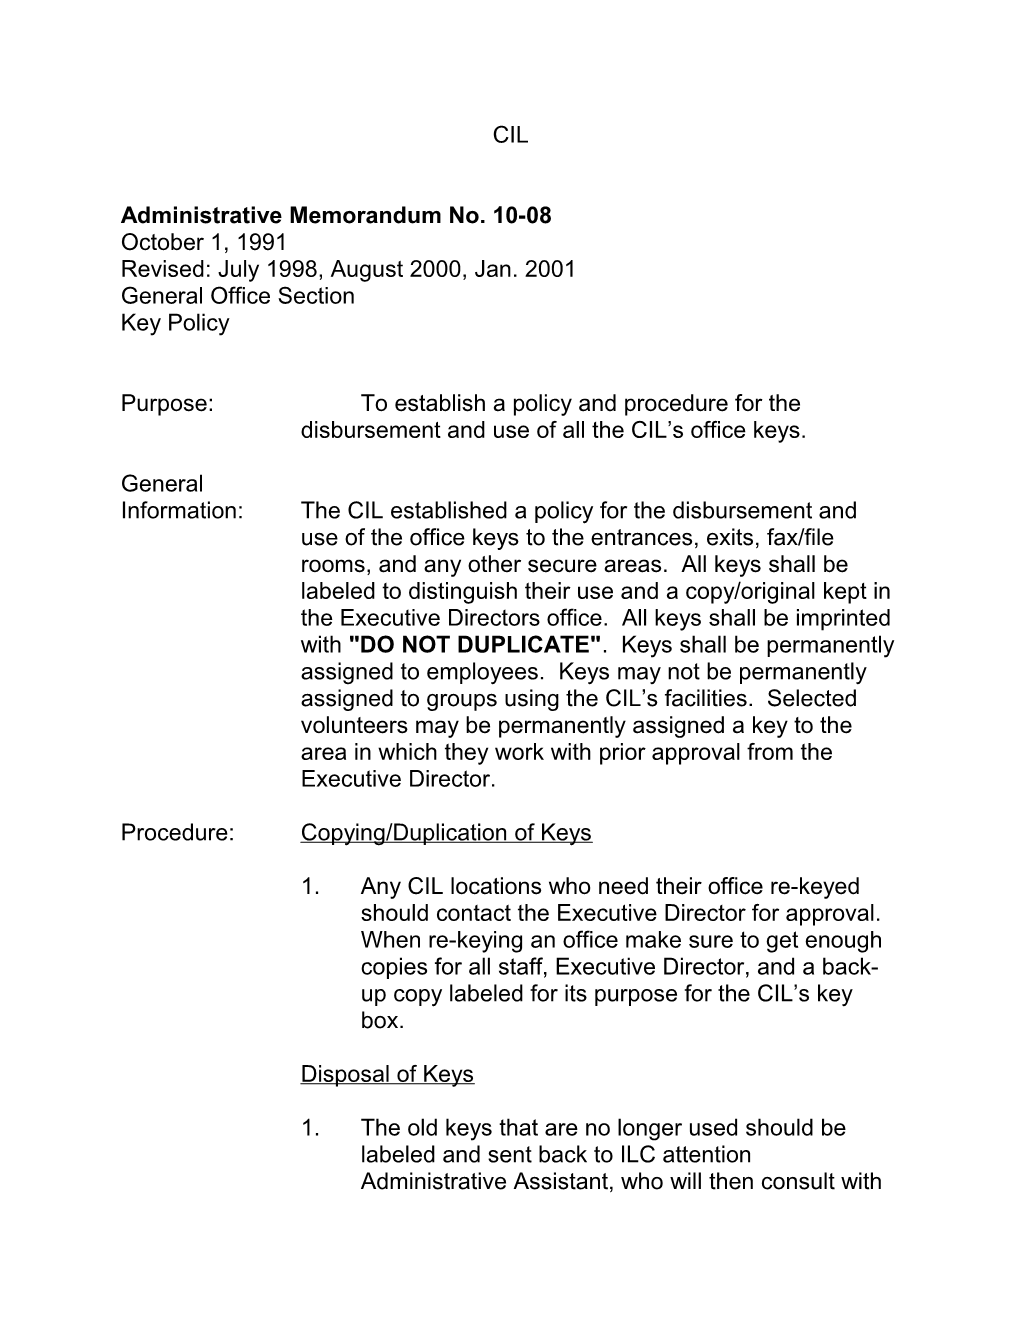 Administrative Memorandum No. 10-08